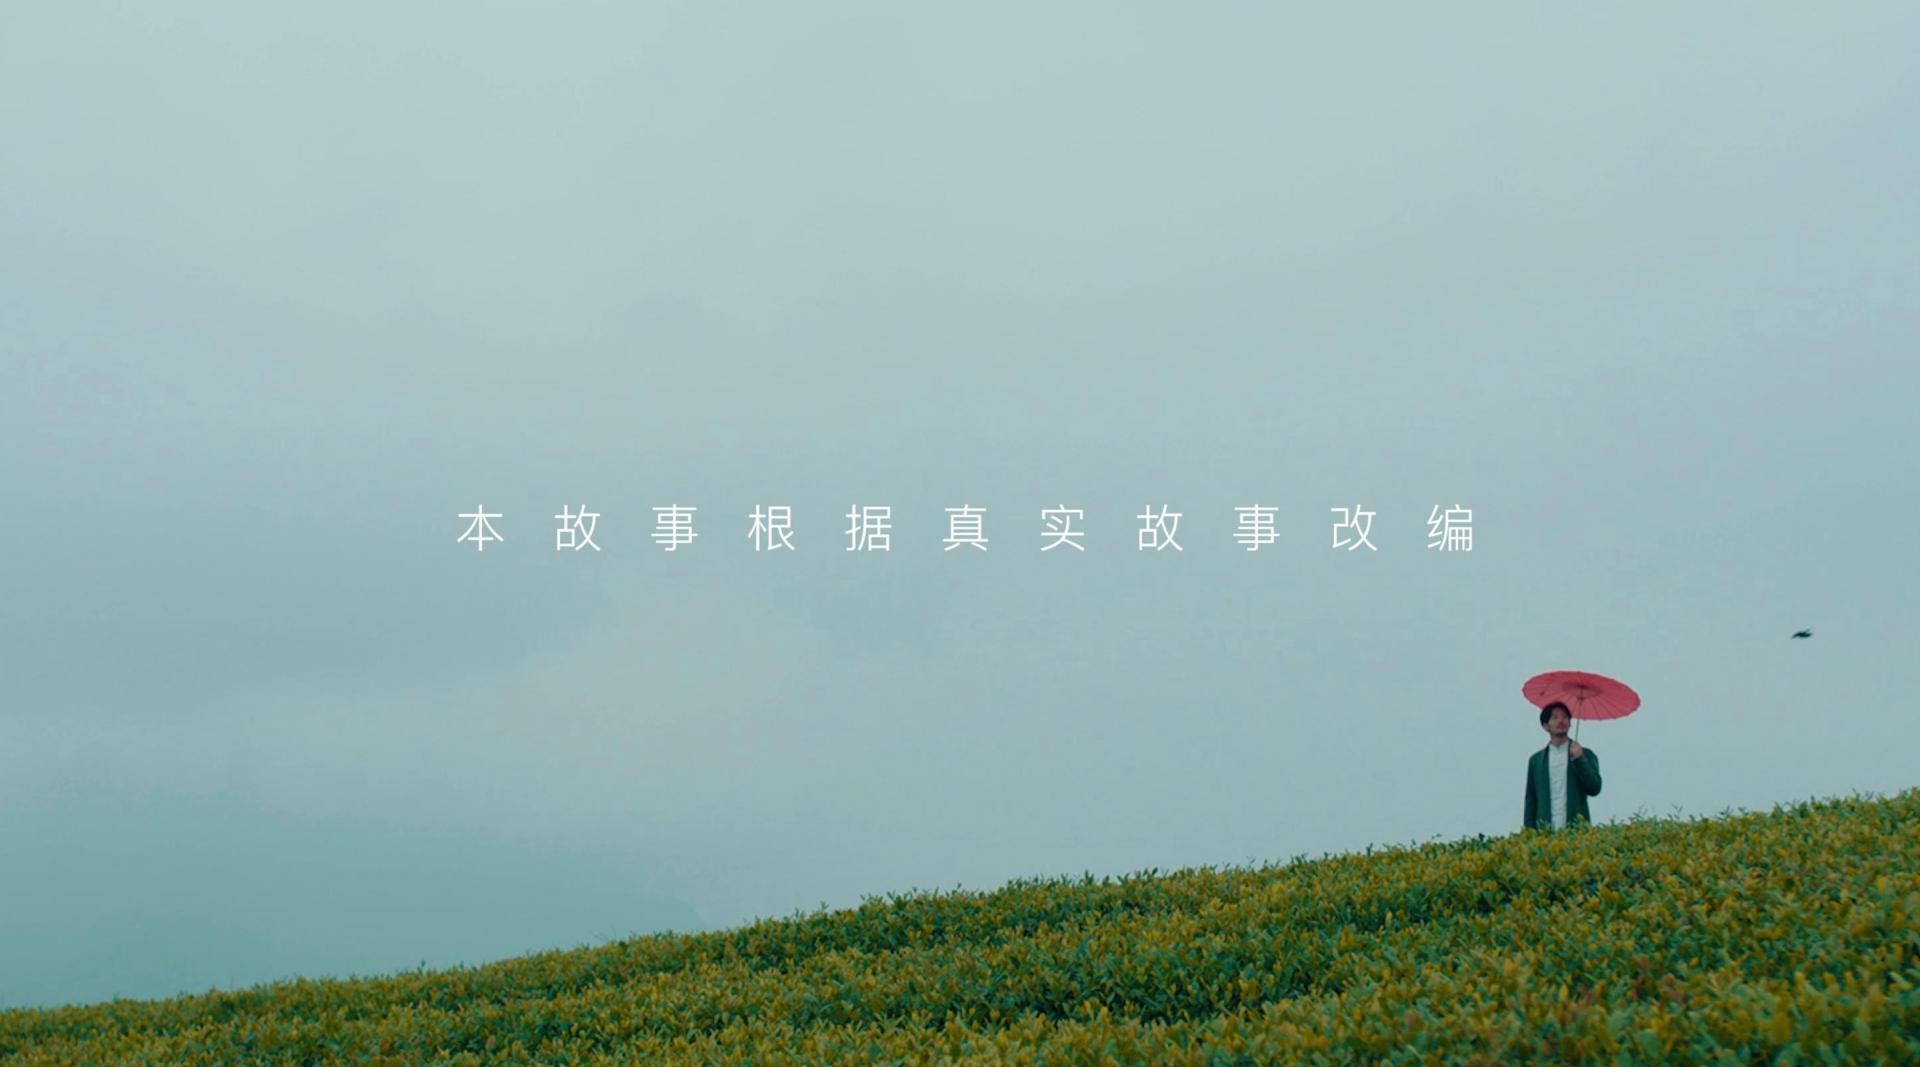 马边茶品牌微电影丨《一叶知晴雨》